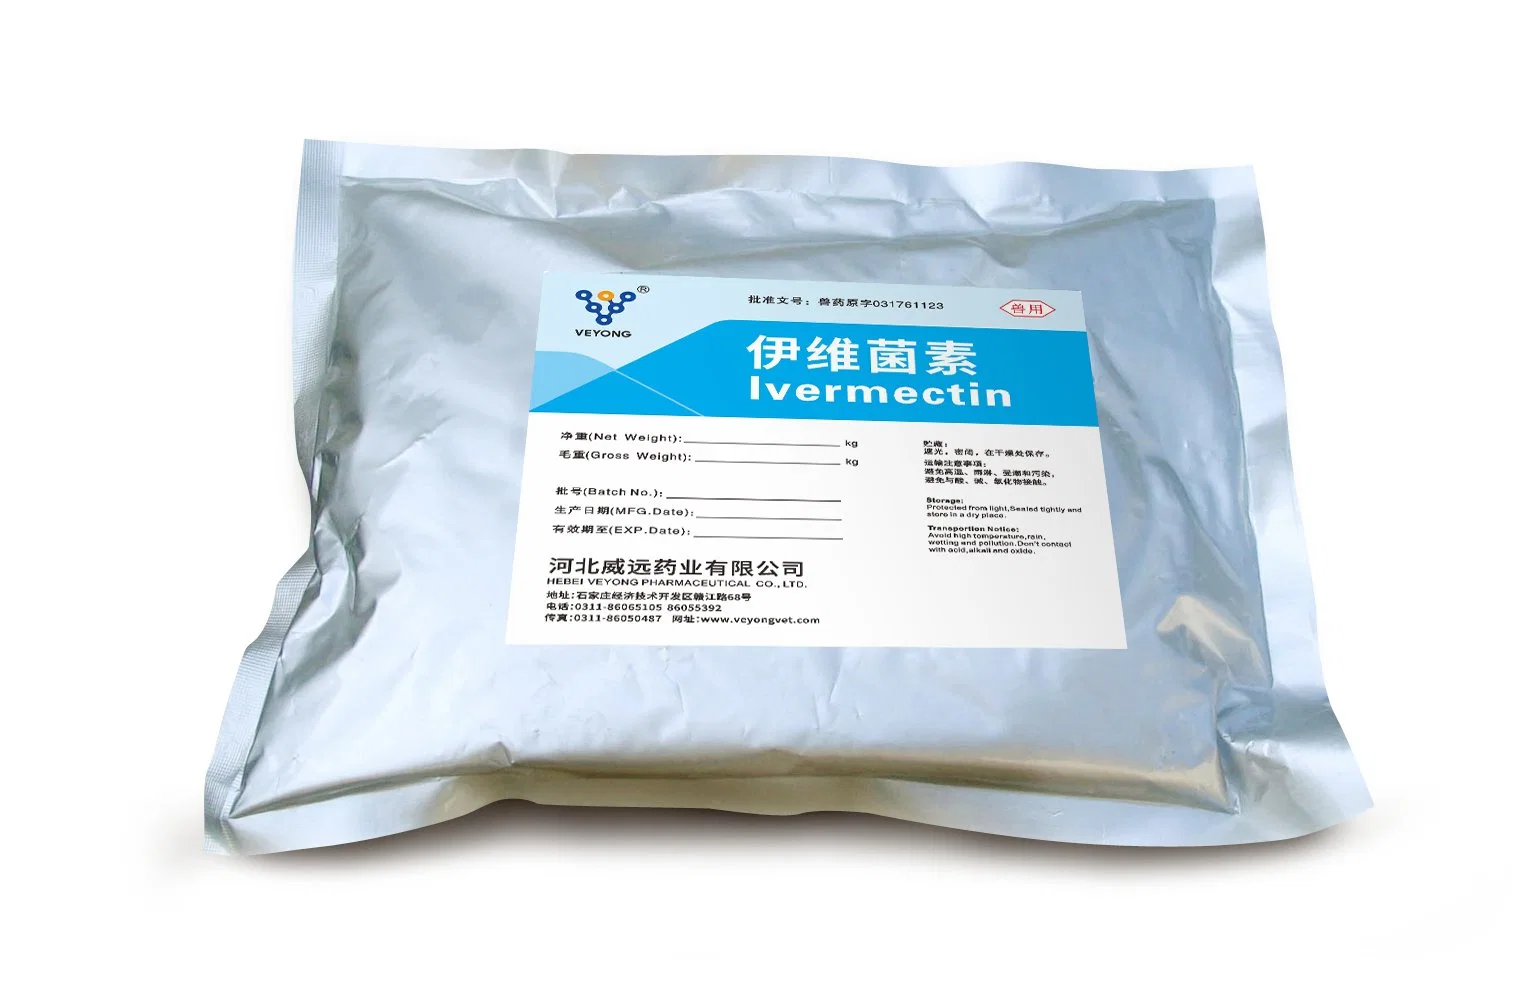 L'ivermectine, USP43, Ep10.0, BPF, FDA, cos, fournisseur d'usine